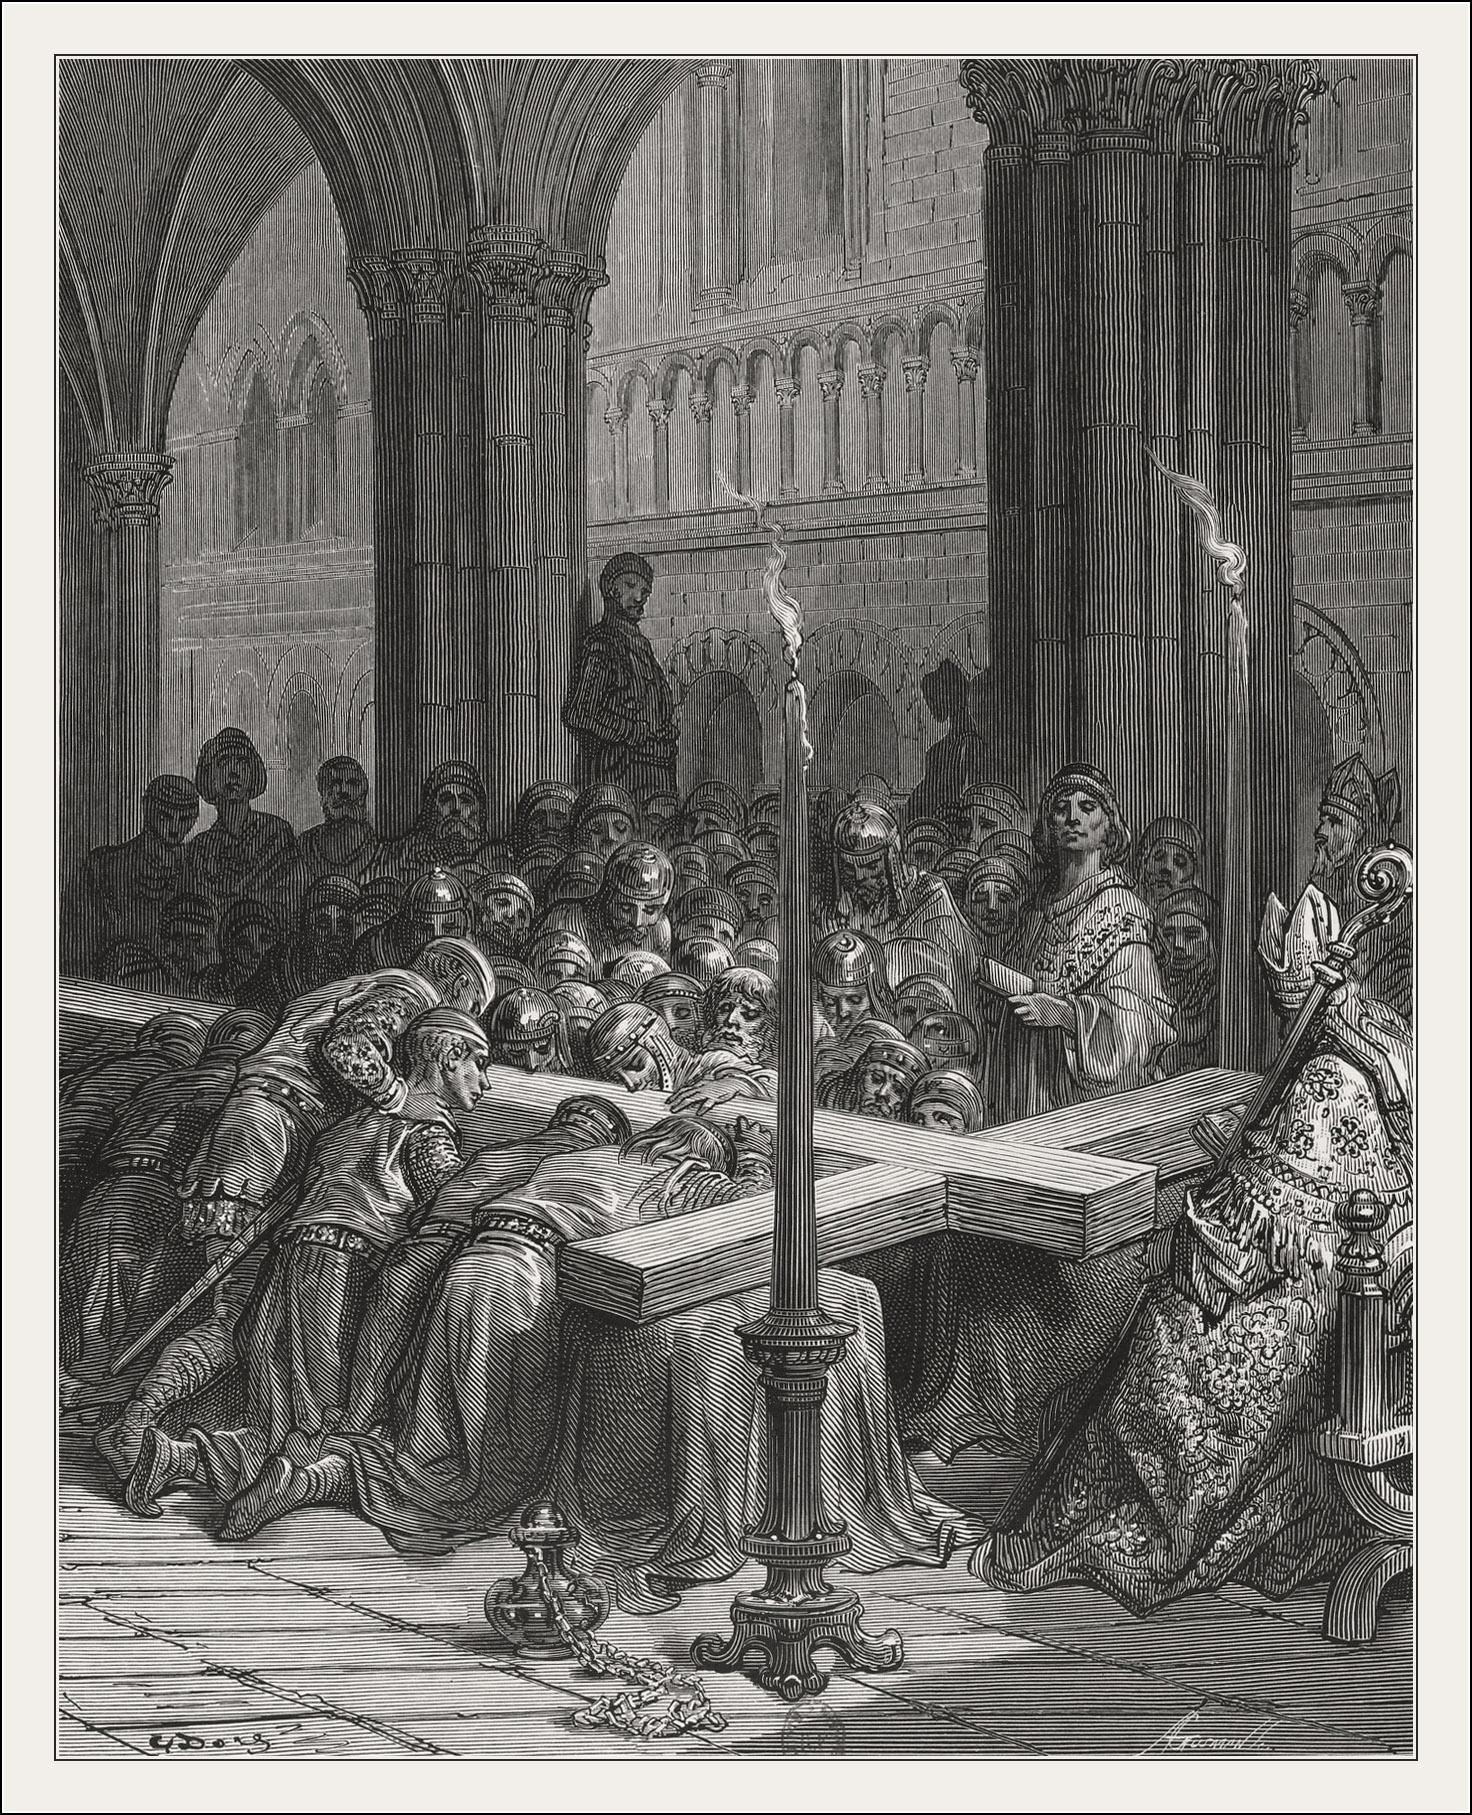 Gustave Doré, Histoire des croisades